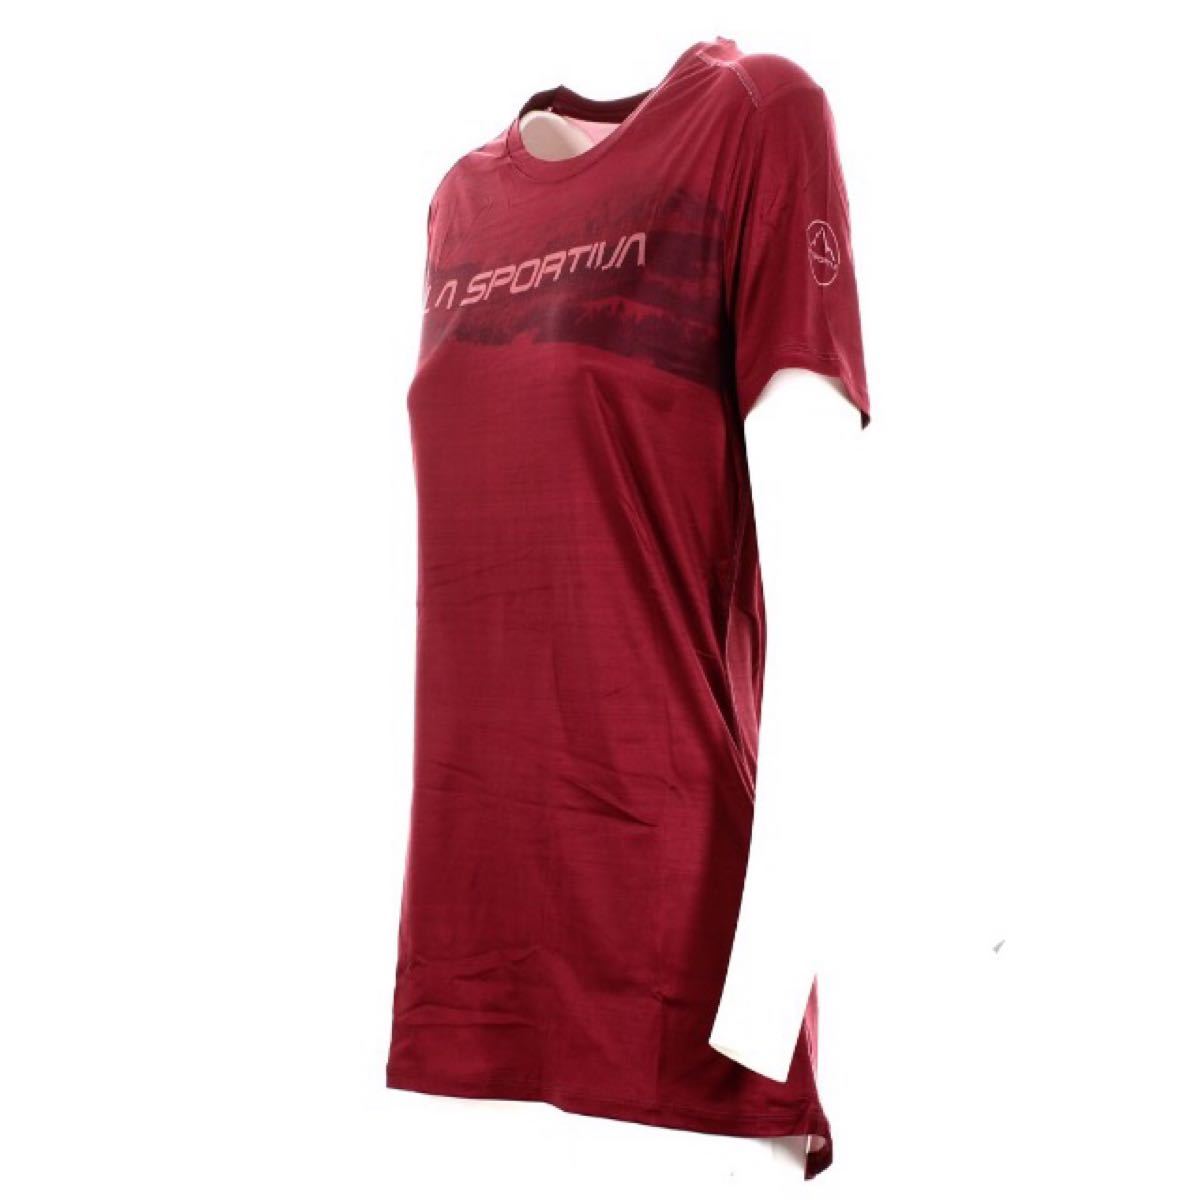 新品 LA SPORTIVA スポルティバ Horizon Tシャツ Red Plum S